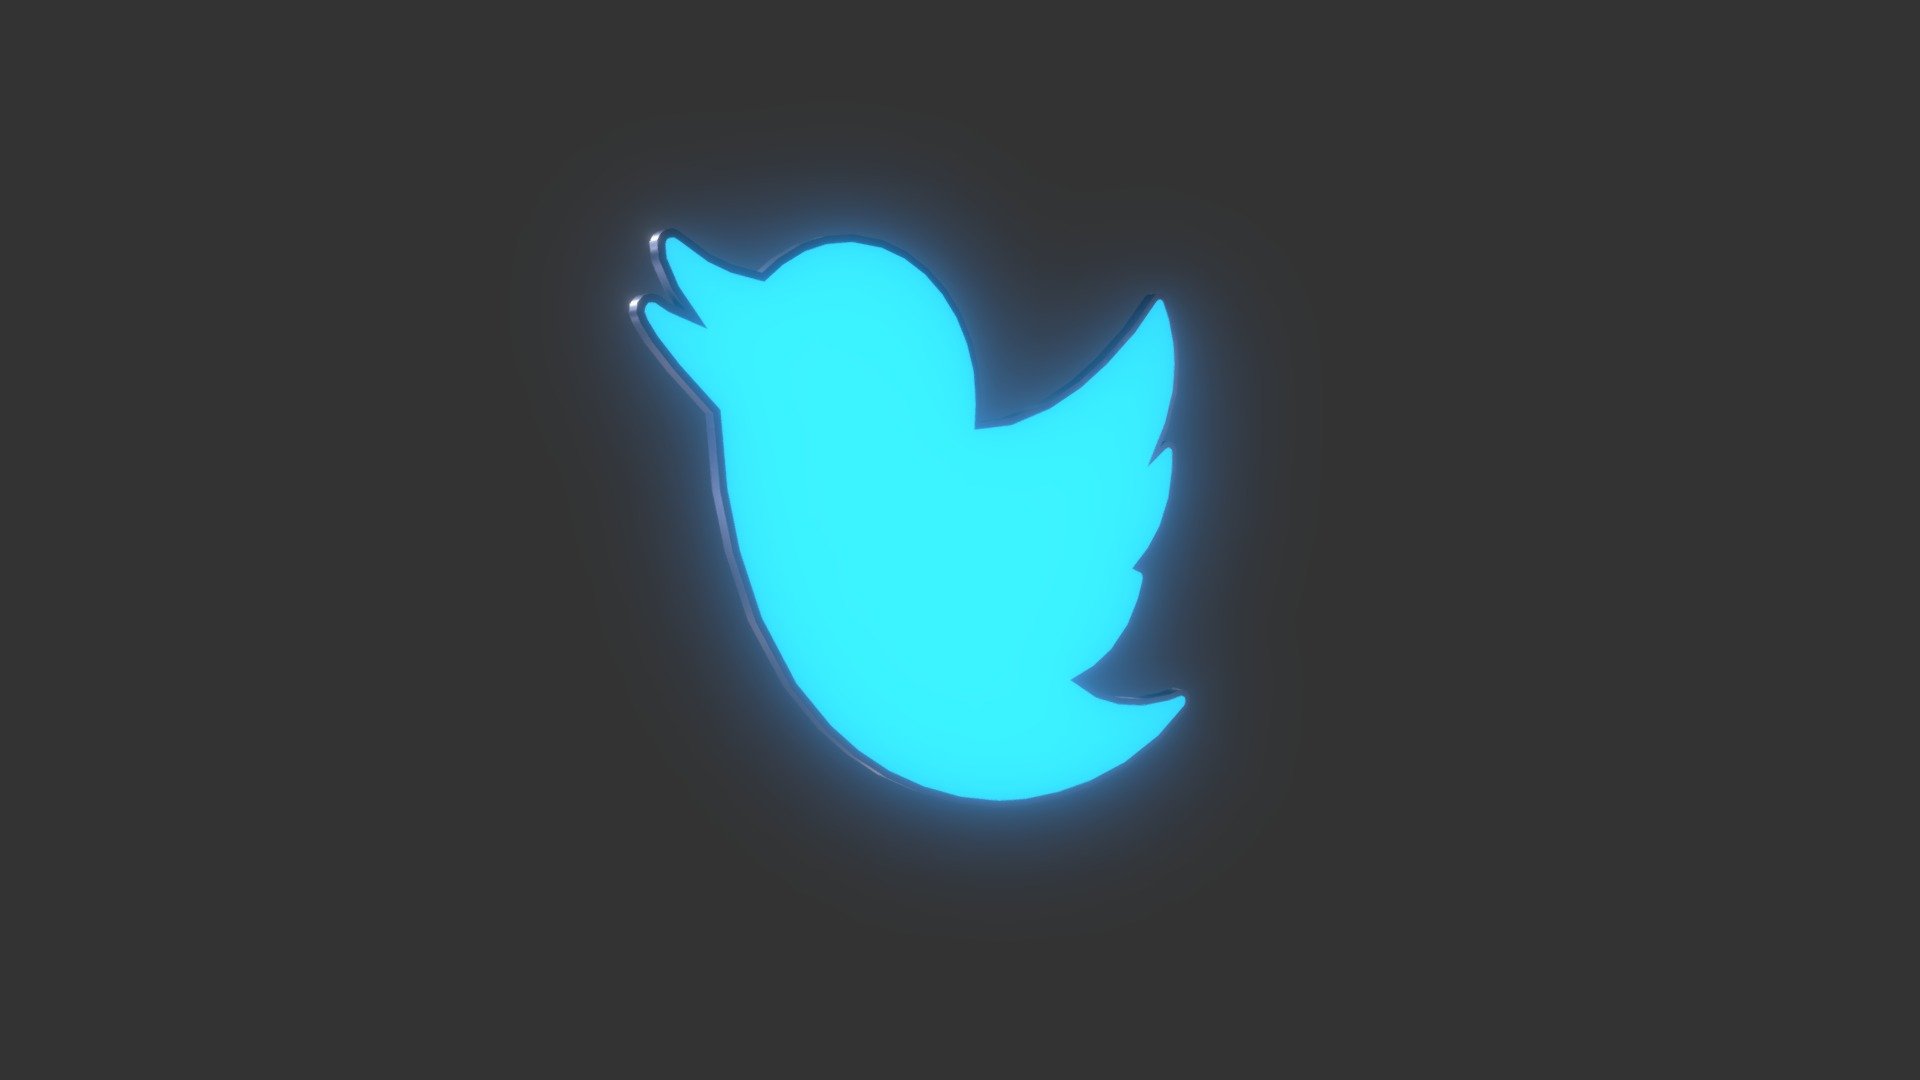 twitter bird black background